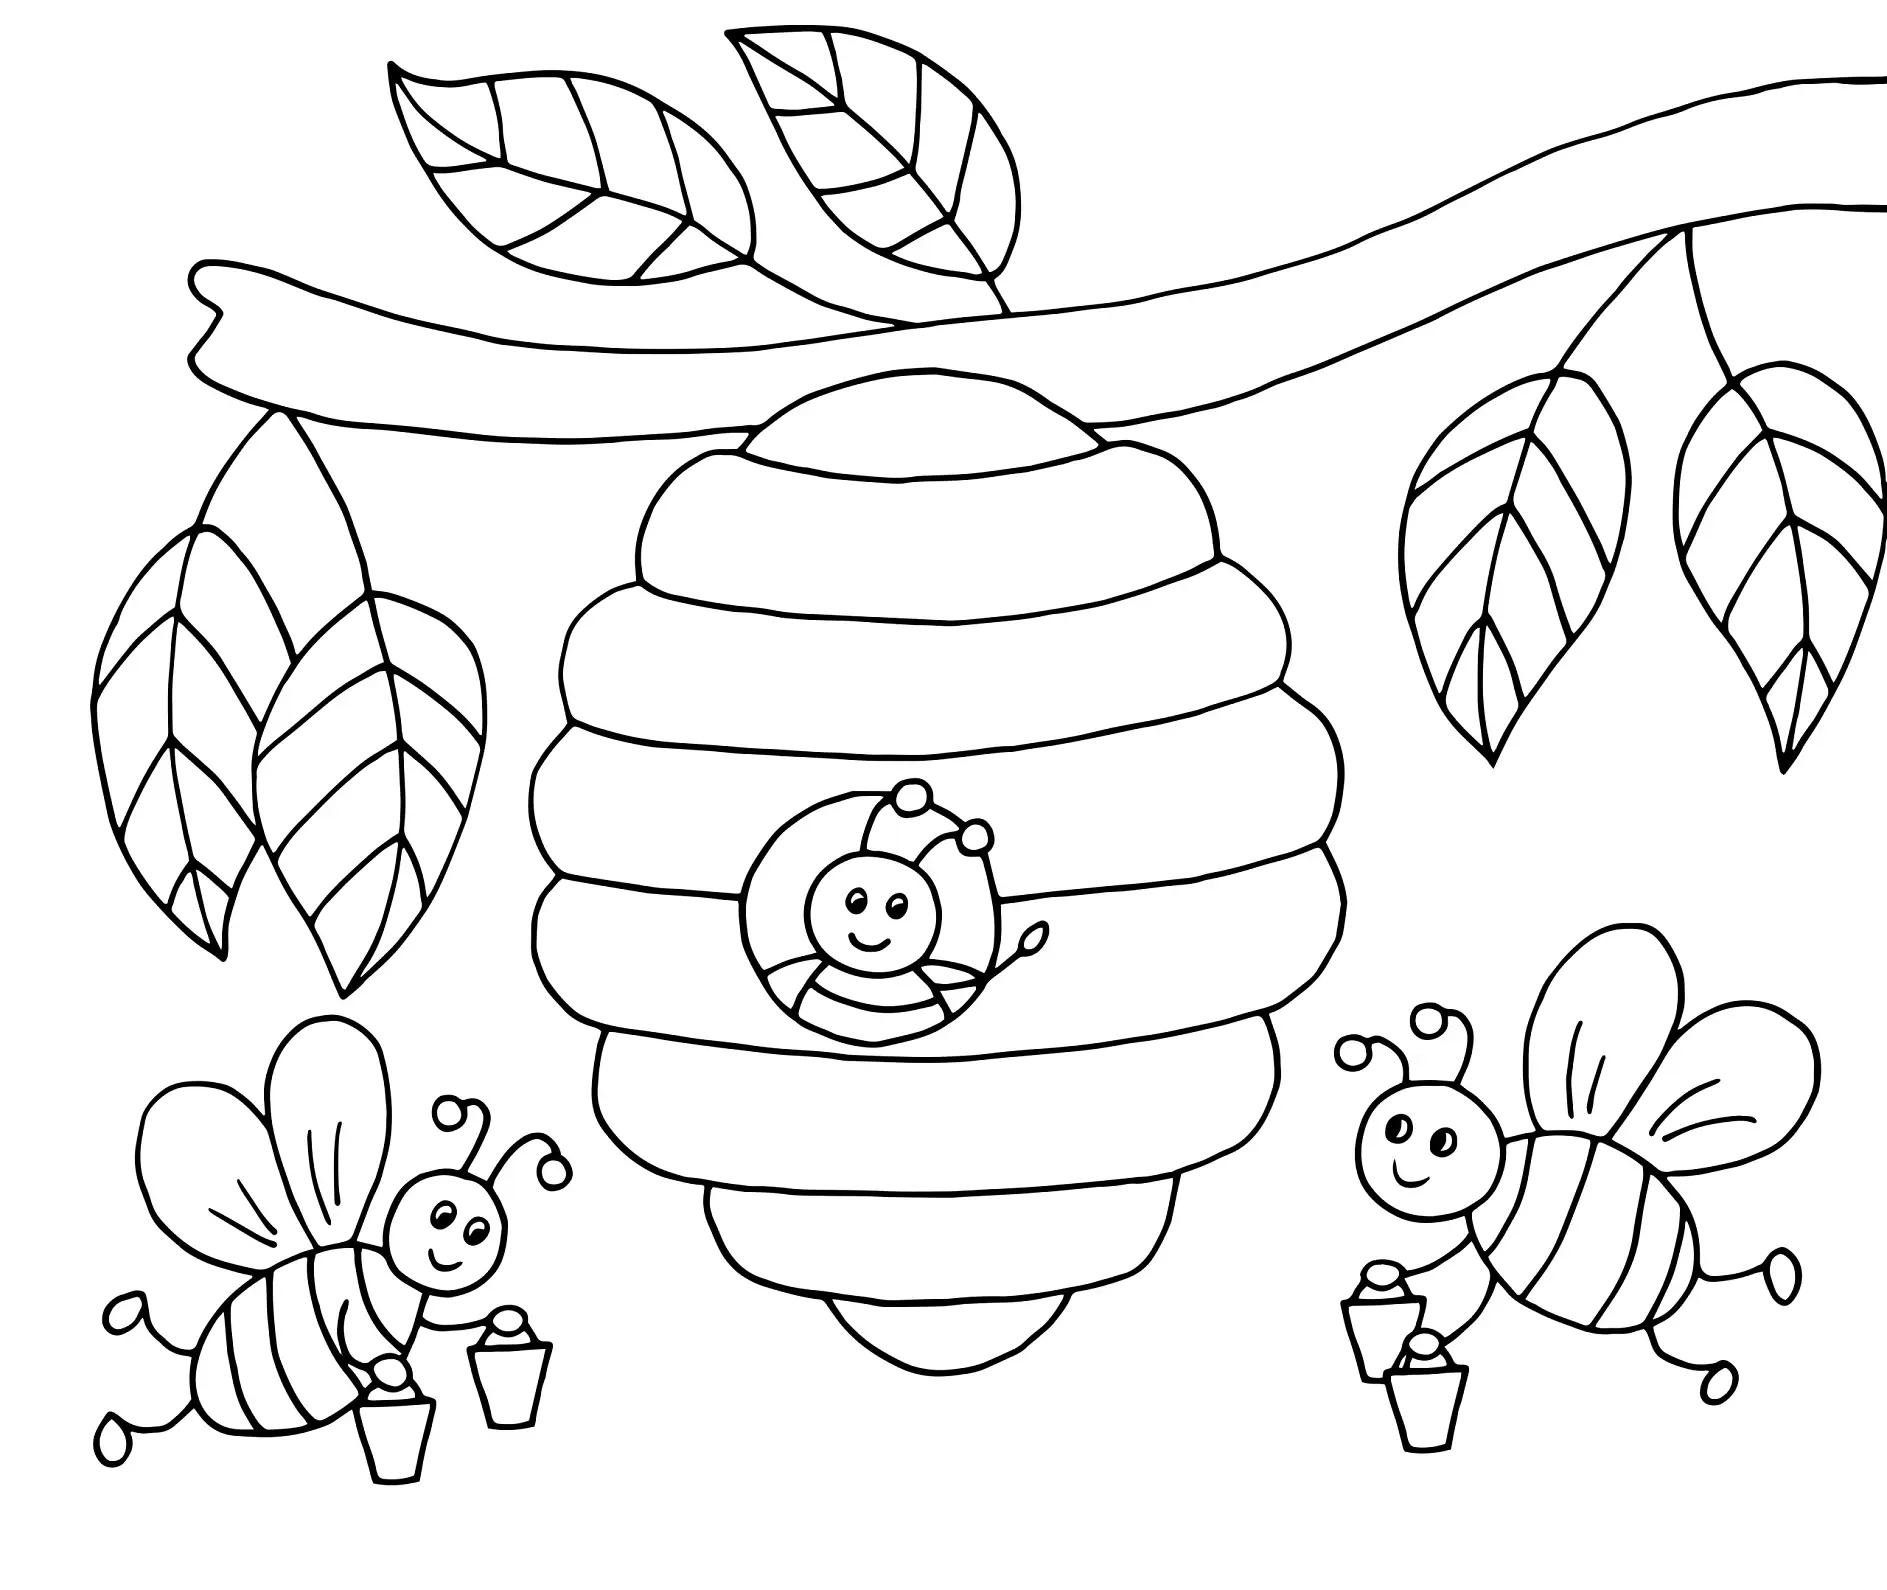 Ausmalbild Bienen mit Eimern sammeln Honig am Bienenstock in Baum